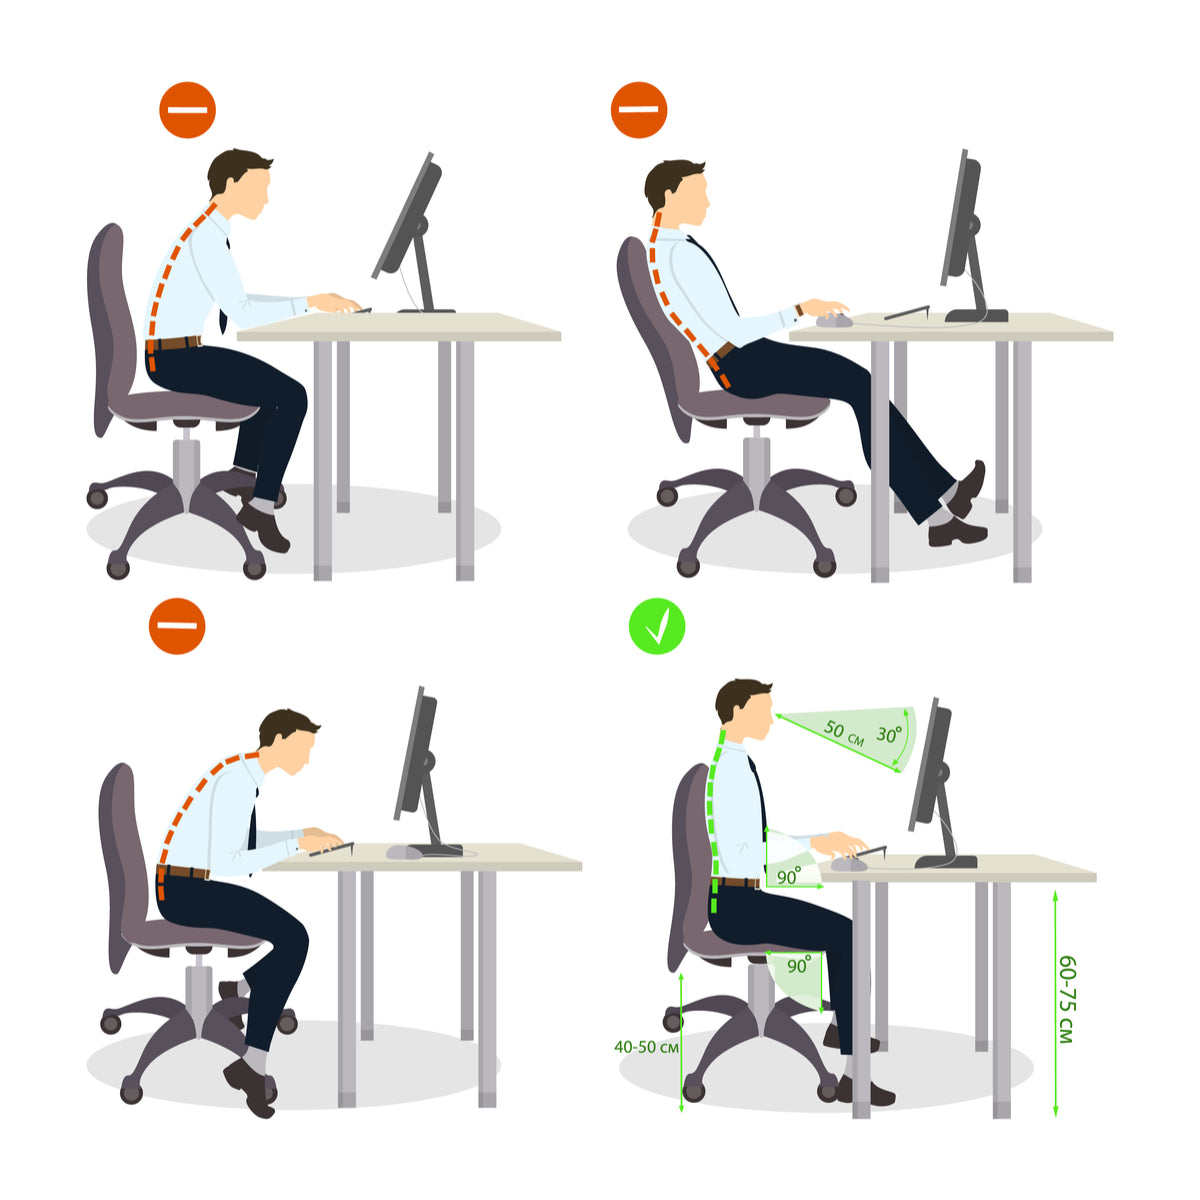 坐在椅子上辦公時，首先須注意臀部應貼近椅面最深處，並讓背部盡量靠在椅背上，如此一來骨盤上半部便可完整被椅背支撐，進而使身體自然保持直角姿勢。
